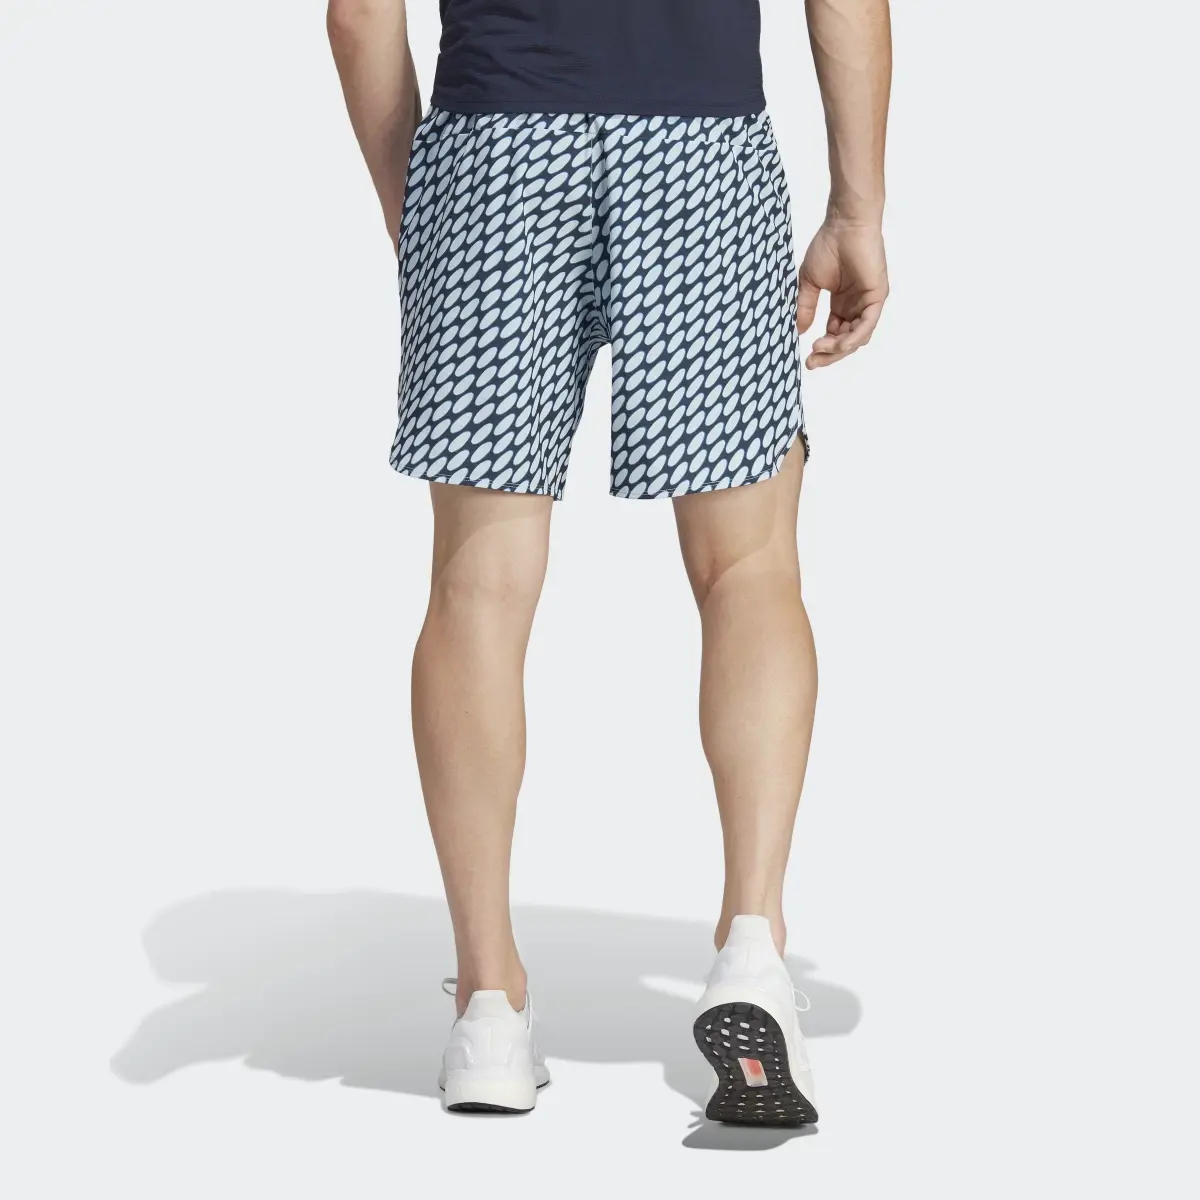 Adidas Shorts Designed for Training adidas x Marimekko. 2